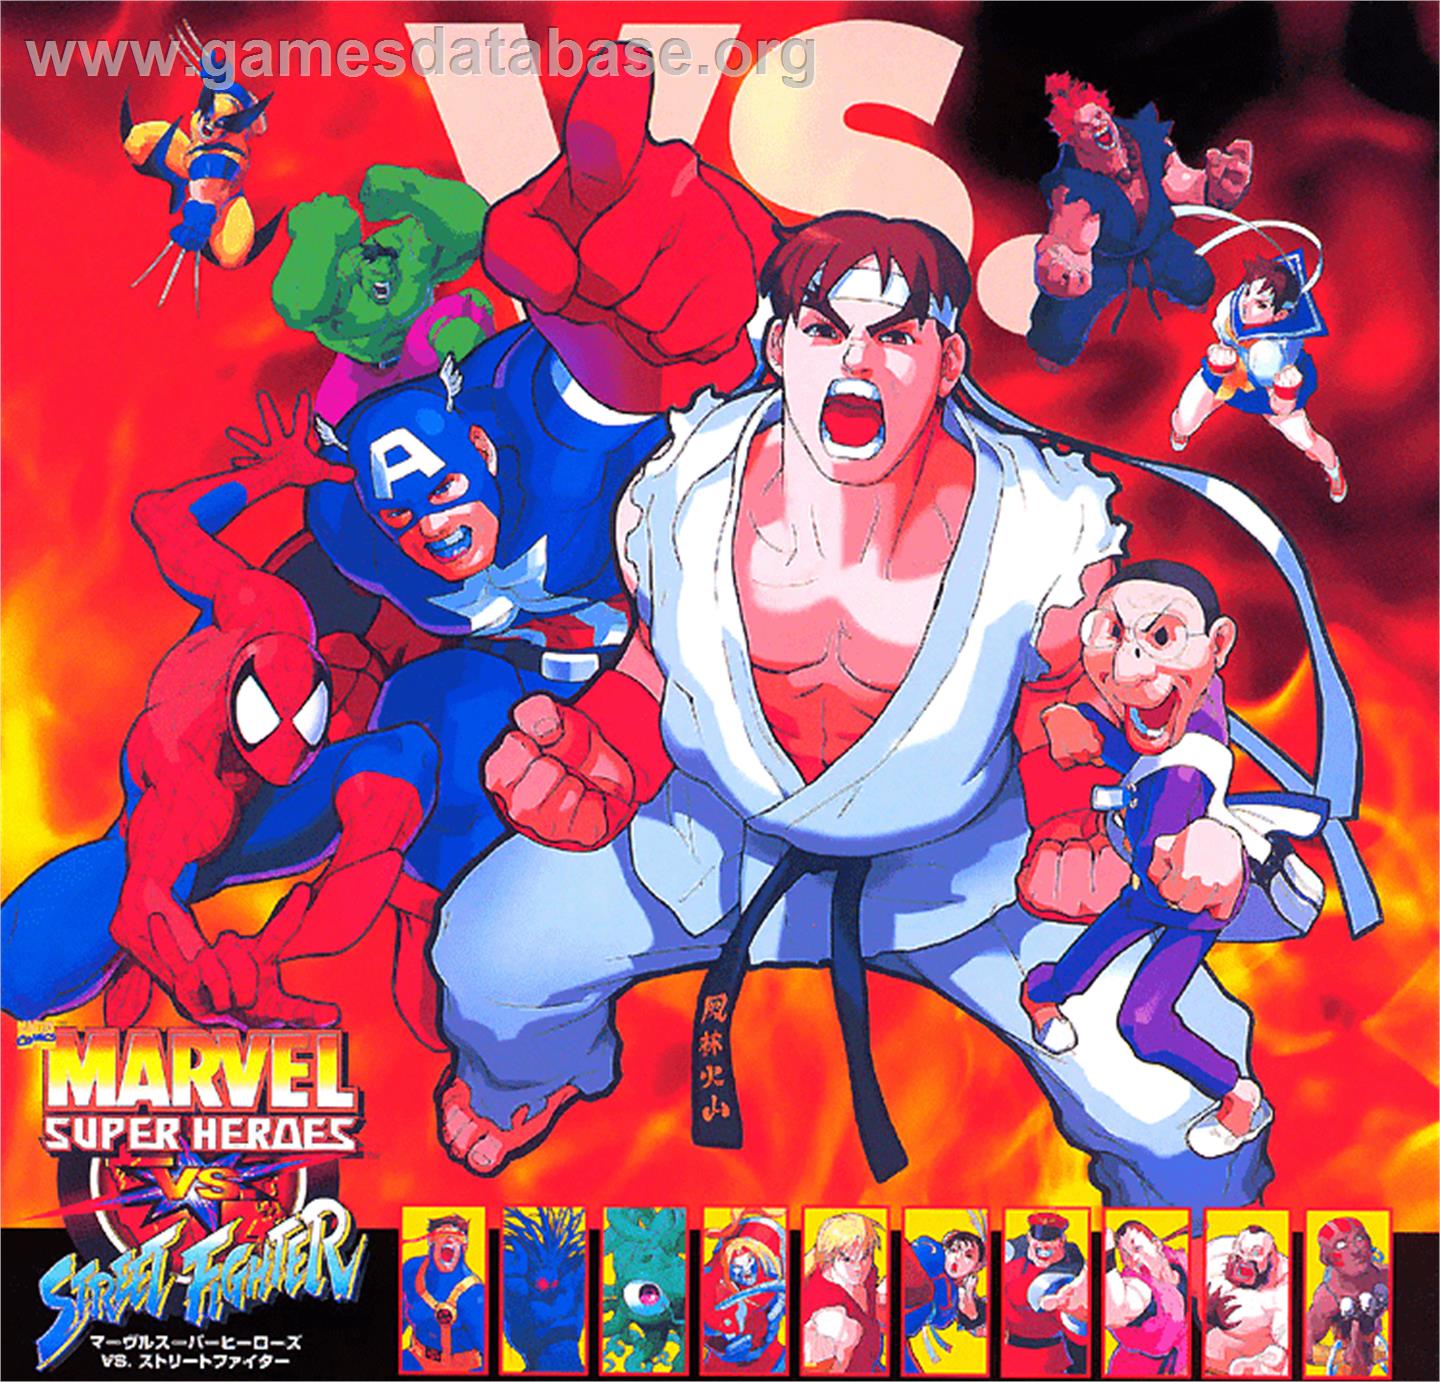 Marvel Super Heroes Vs. Street Fighter - Sony Playstation - Artwork - Advert